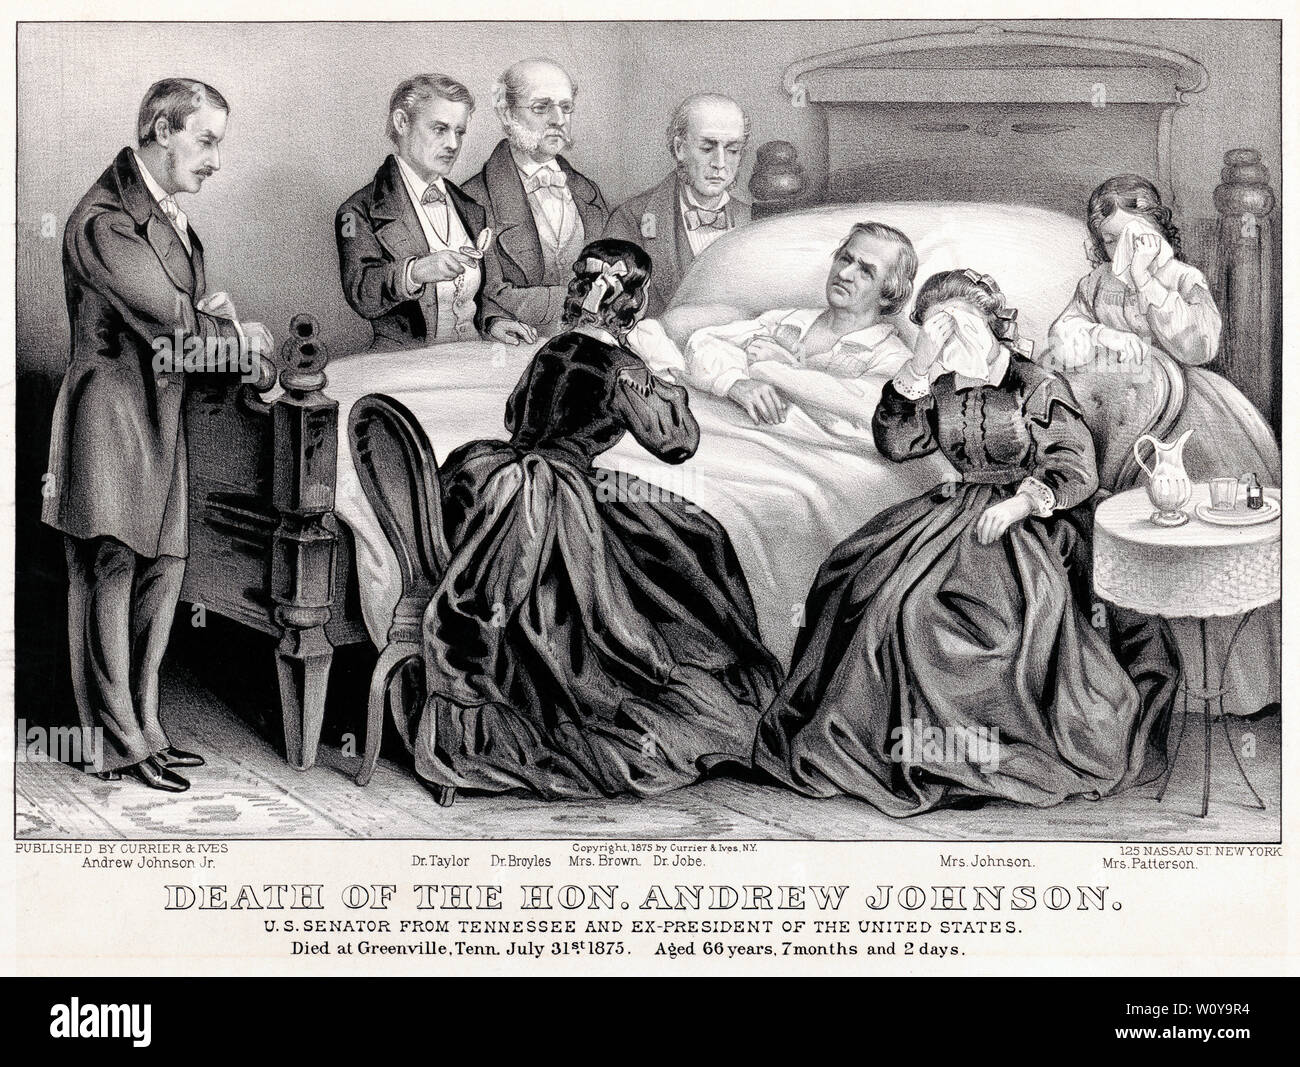 Tod des Hon Andrew Johnson, US-Senator aus Tennessee und Ex-präsident der Vereinigten Staaten, Lithographie von Currier & Ives, 1875 Stockfoto